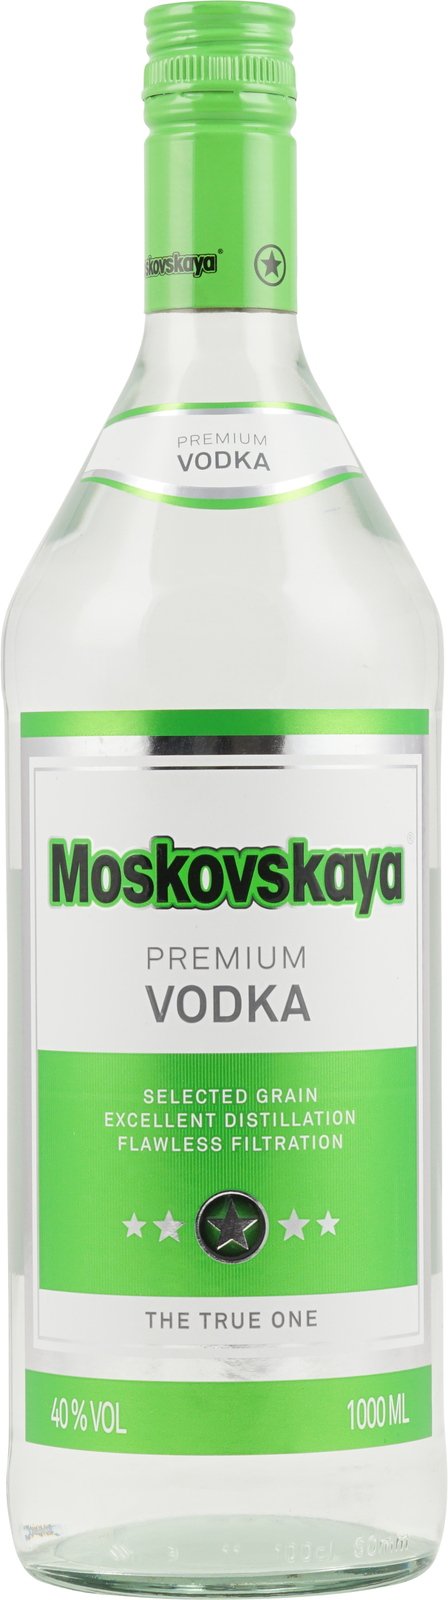 Liter Premium Wodka 1 40% Russischer Moskovskaya